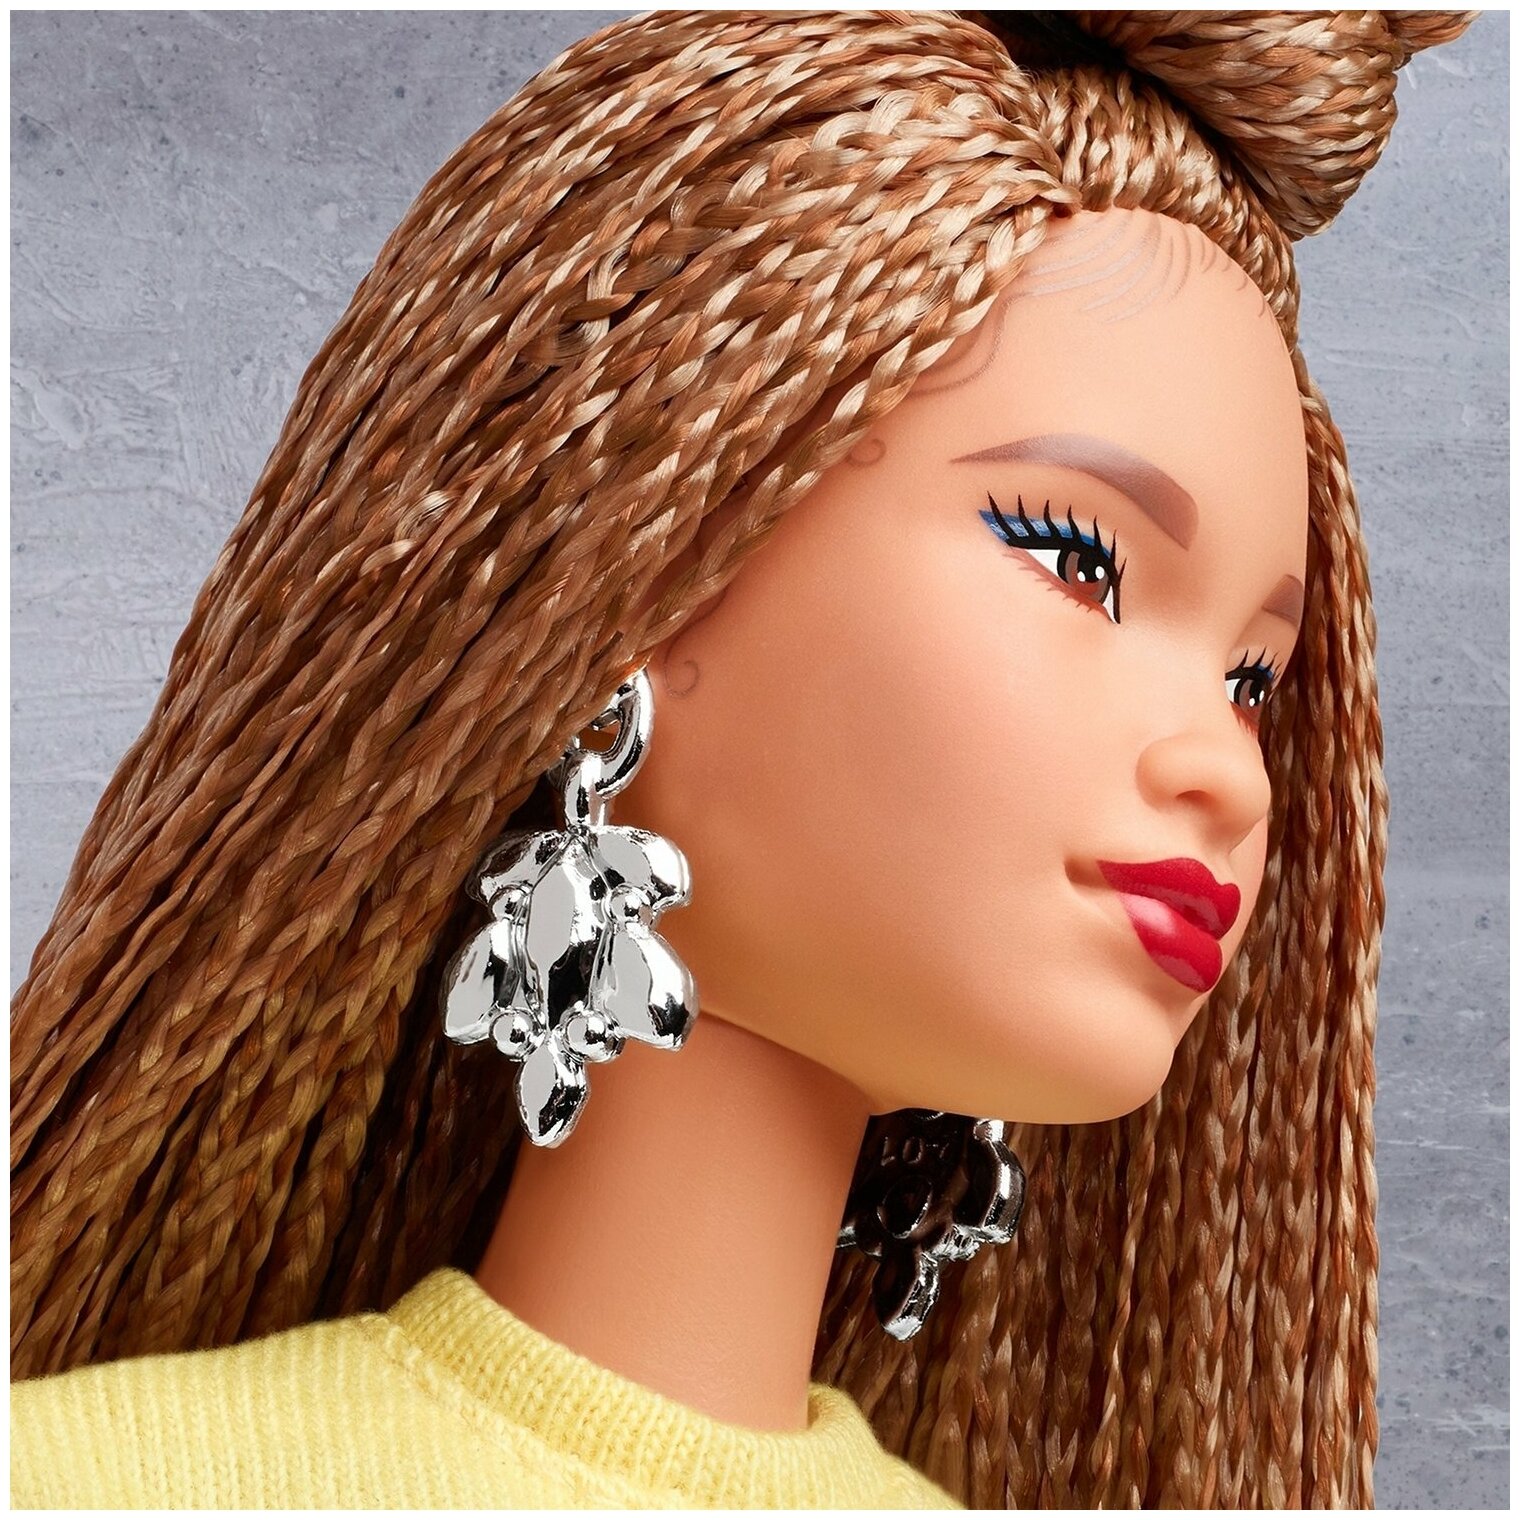 Коллекционная кукла Barbie "BMR 1959" с косичками (GHT91) - фото №15